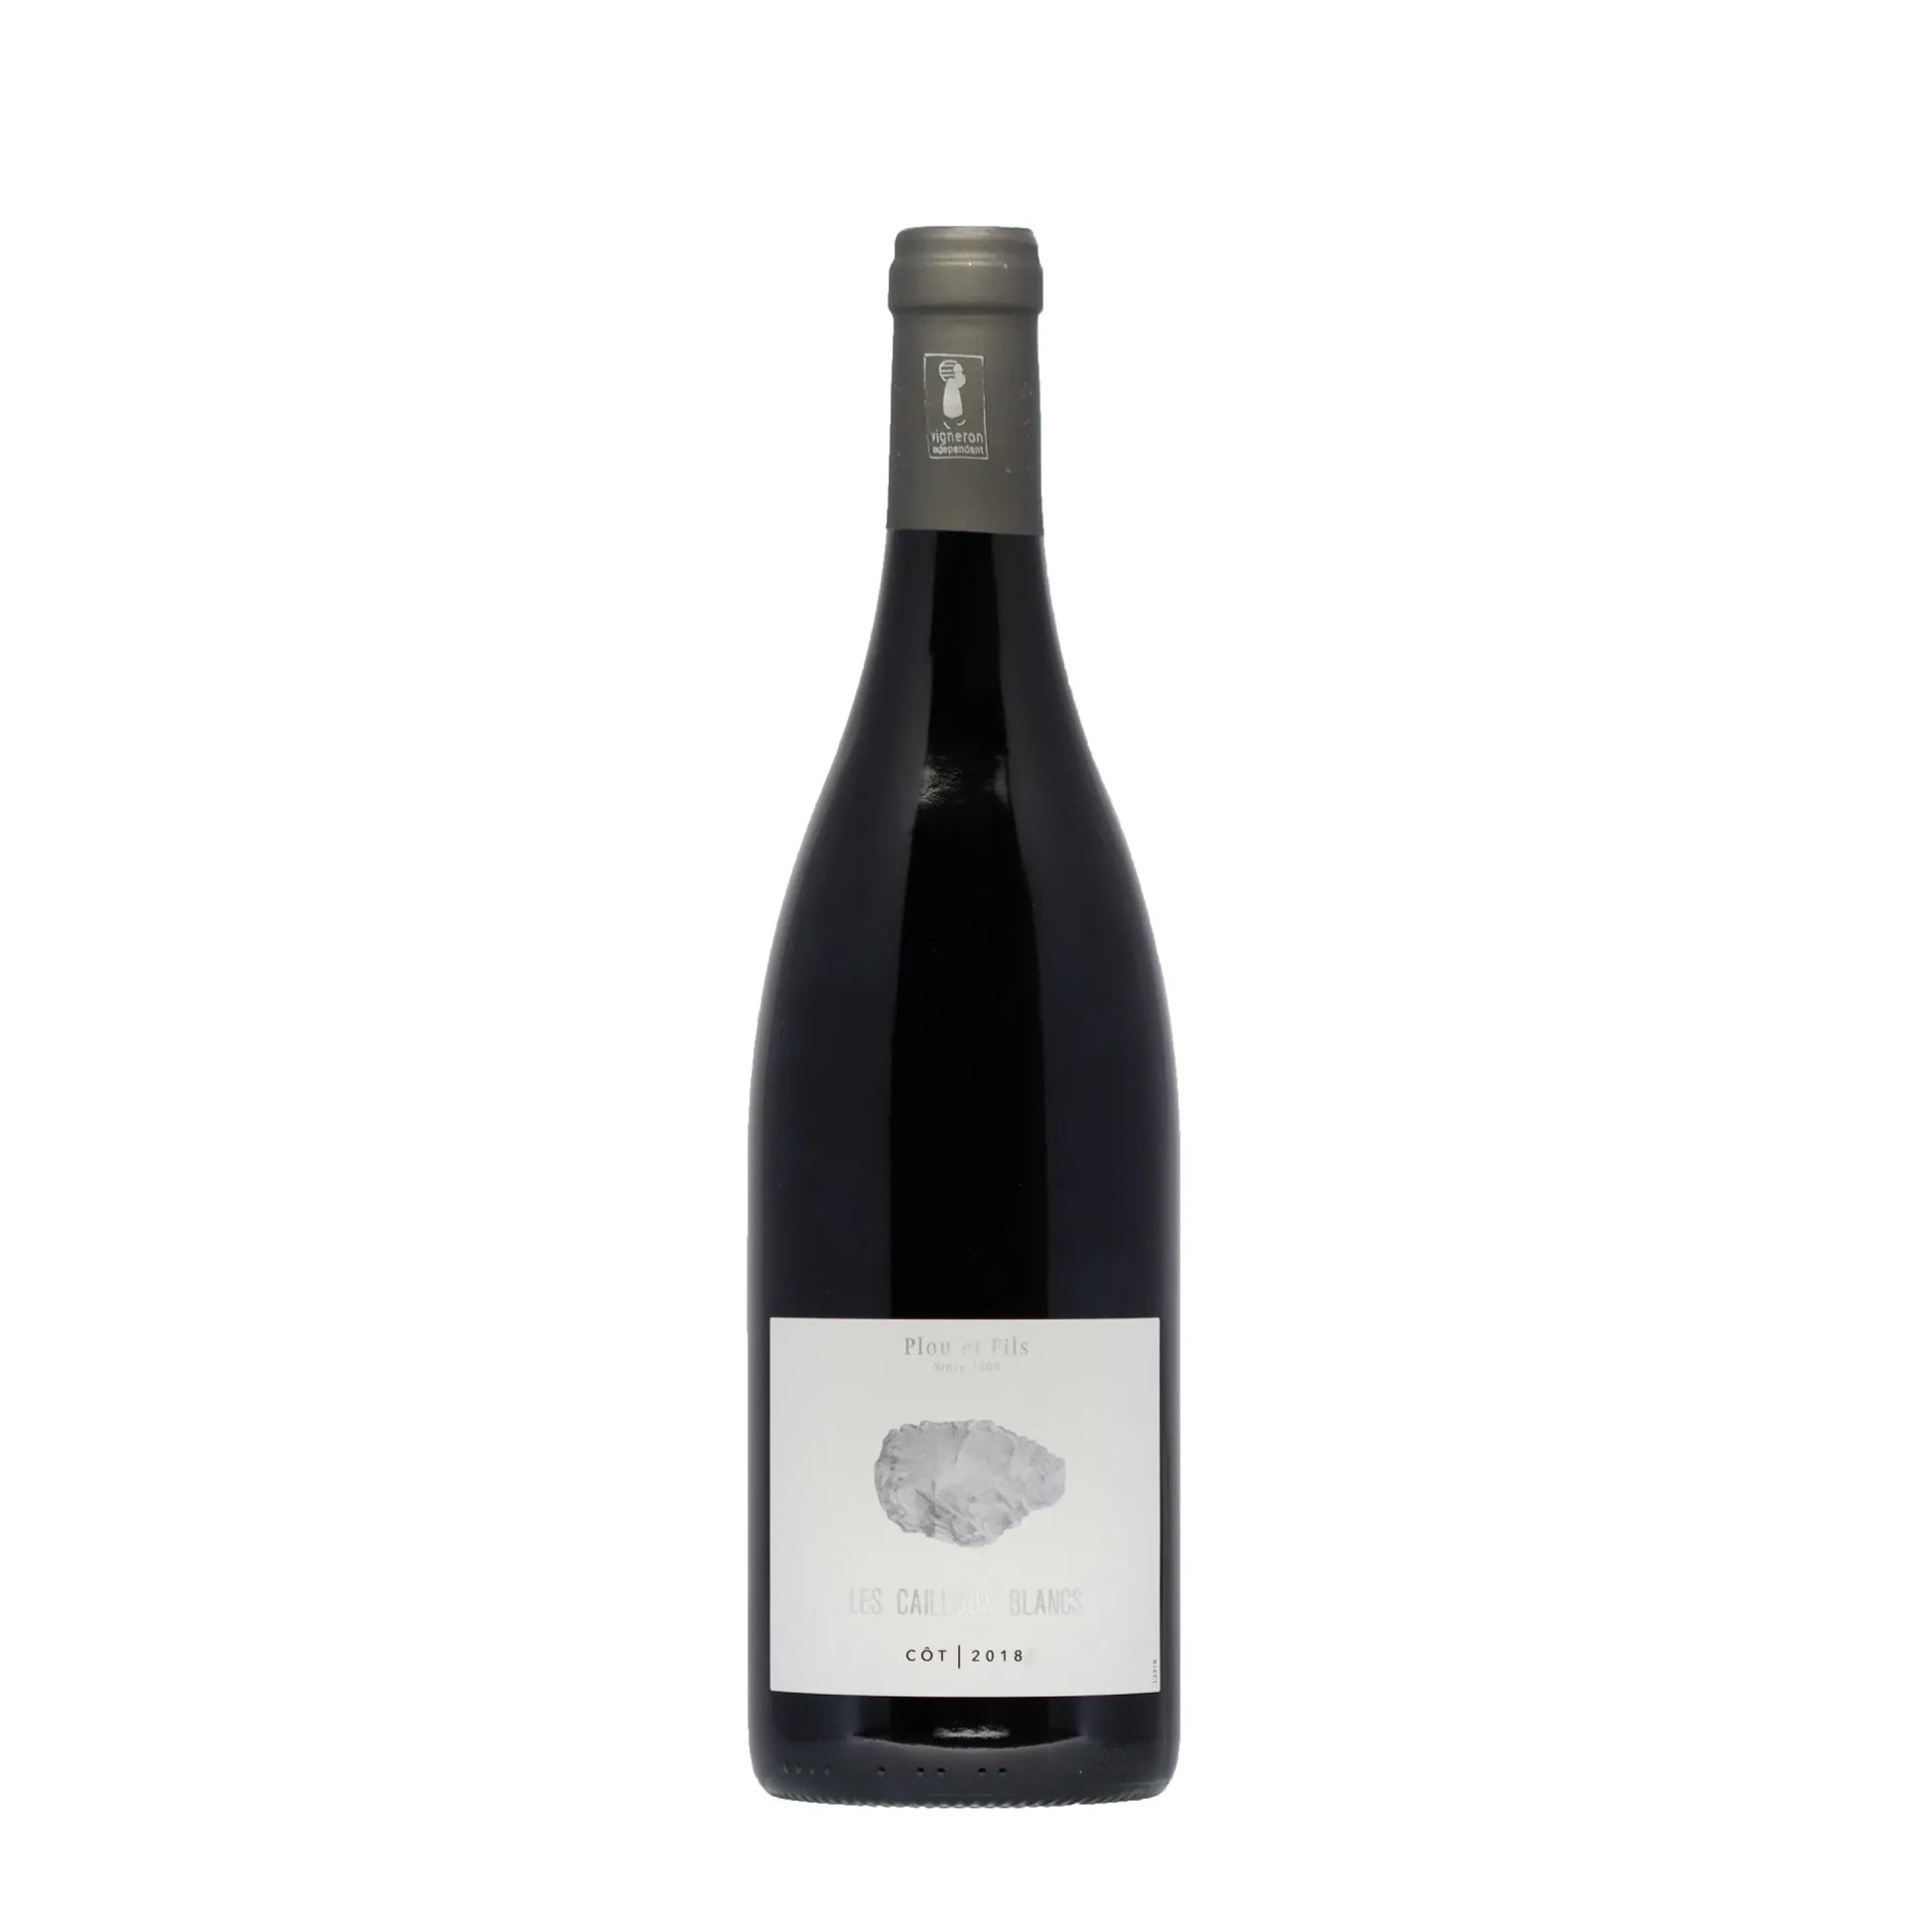 Les Cailloux Blancs Côt 2018 Domaine Plou & Fils Frankreich - Rotwein - Wein